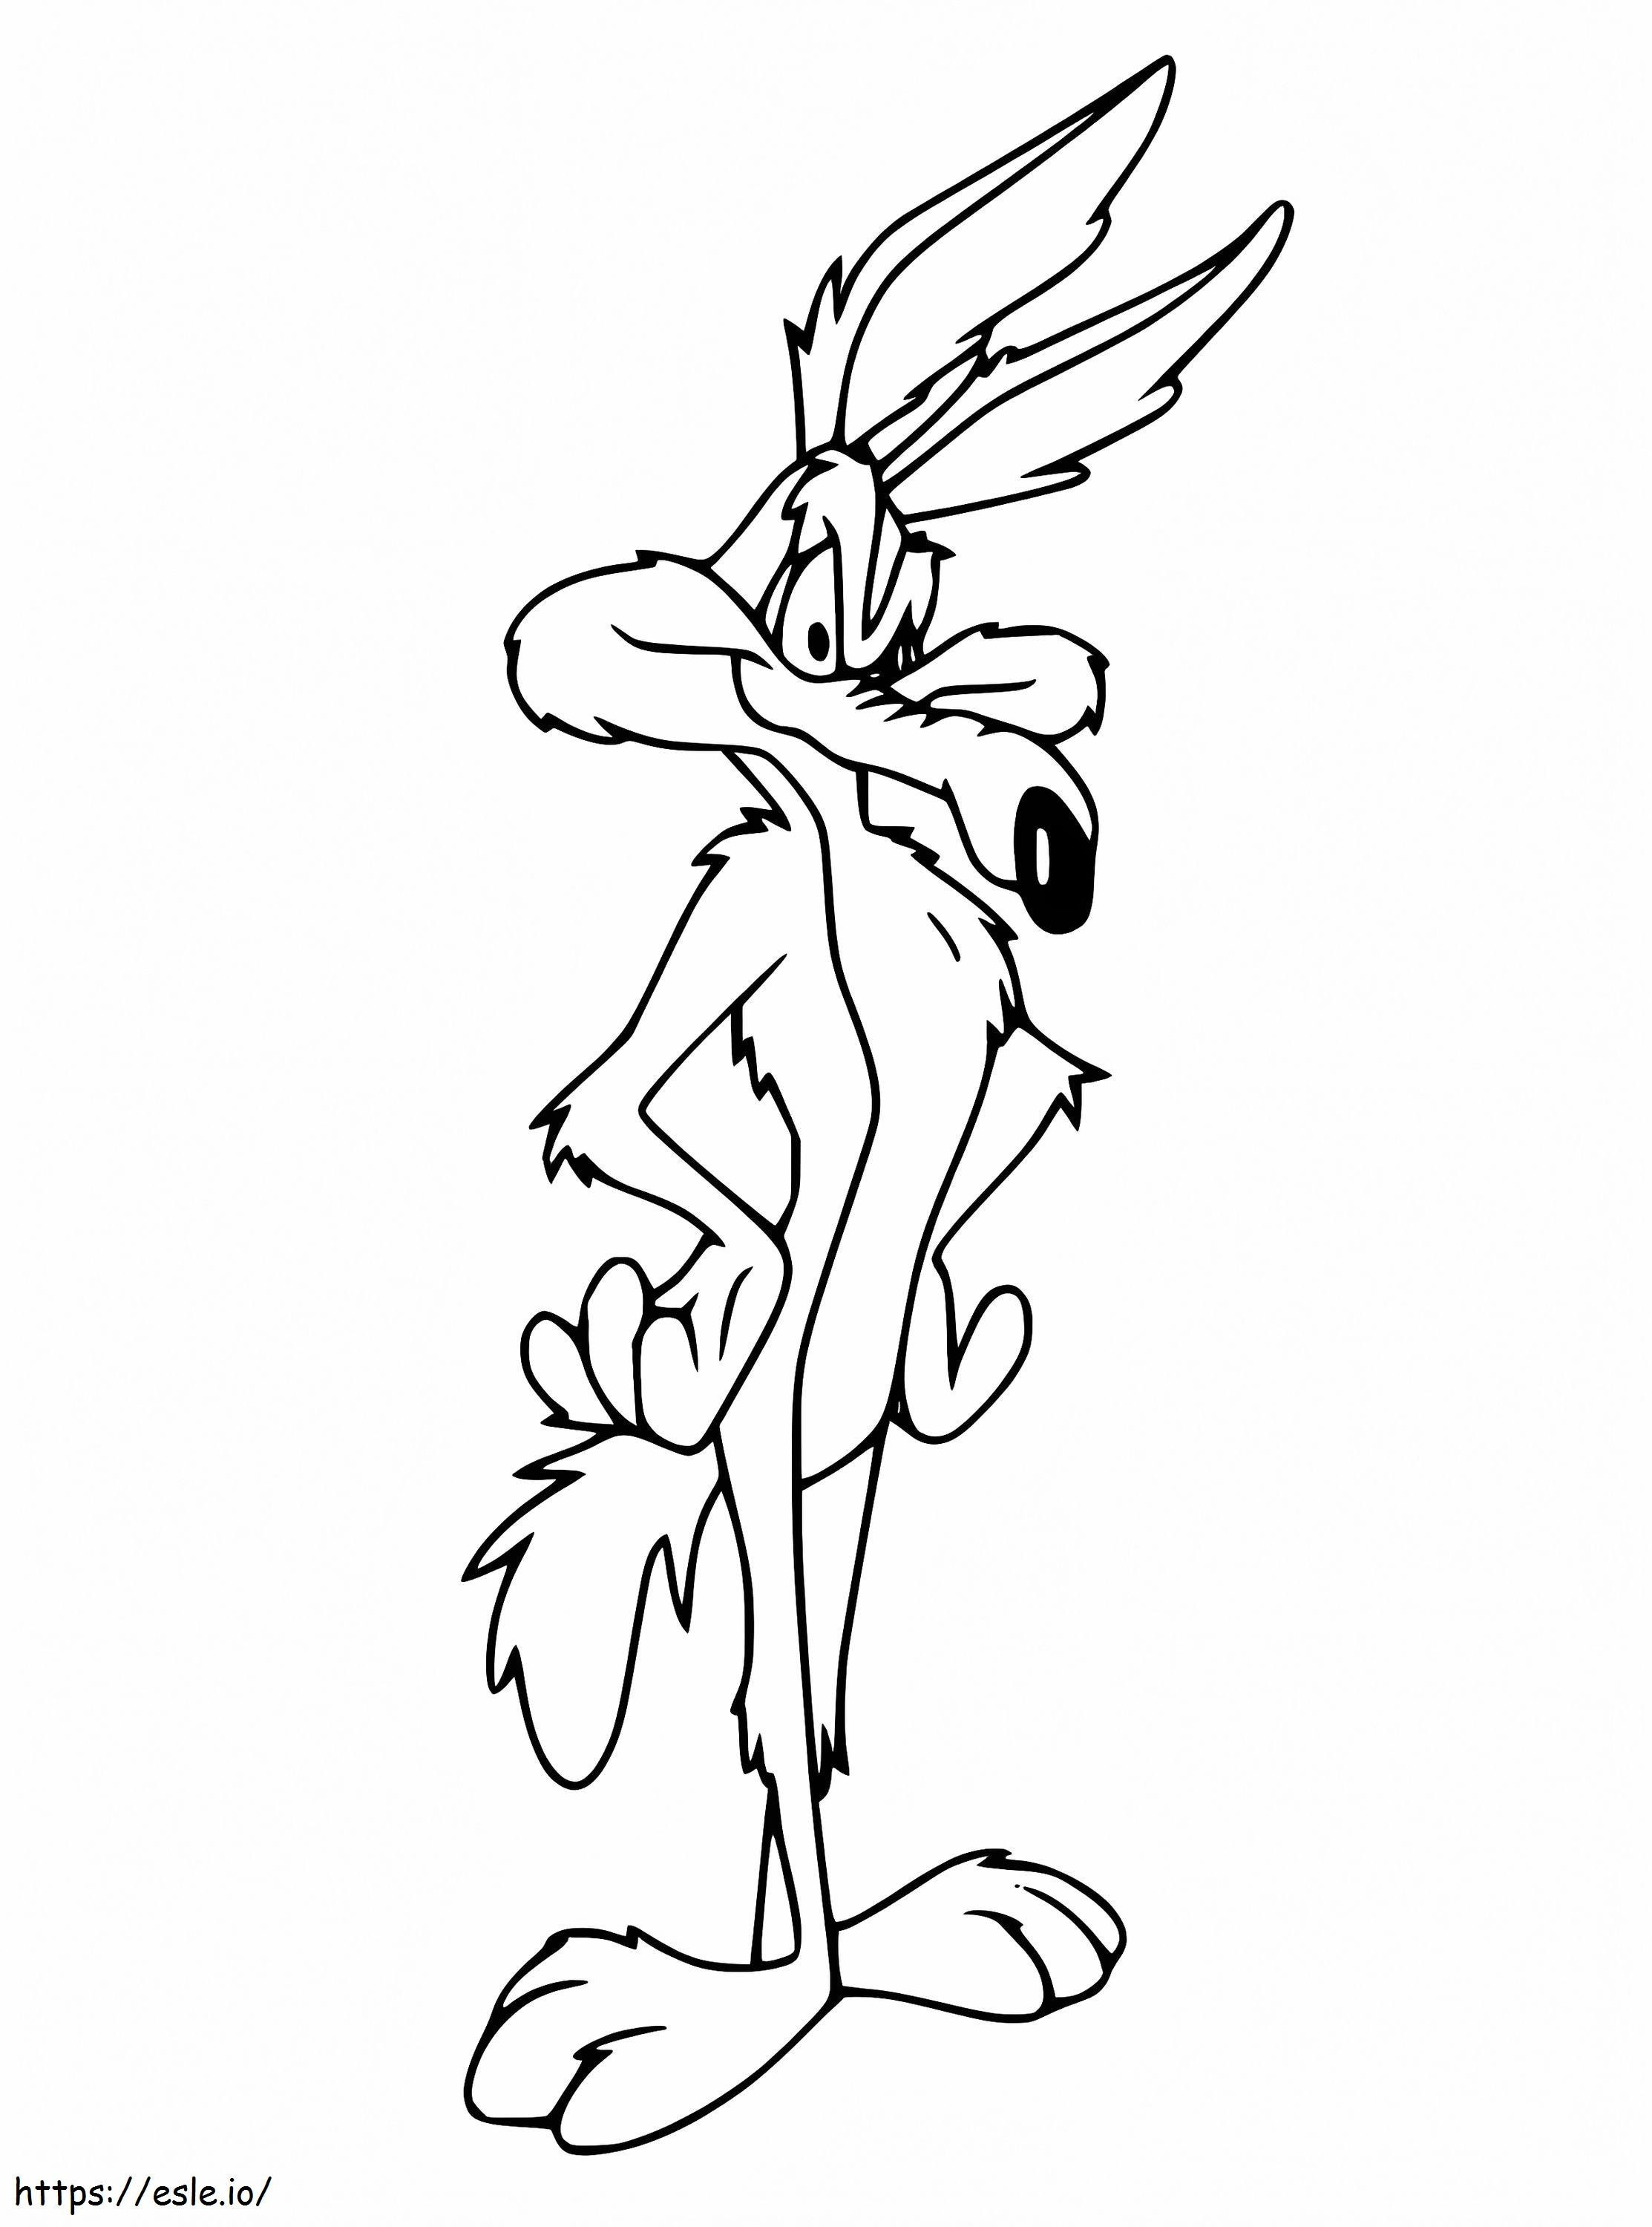 Wile E Coyote de la Looney Tunes de colorat